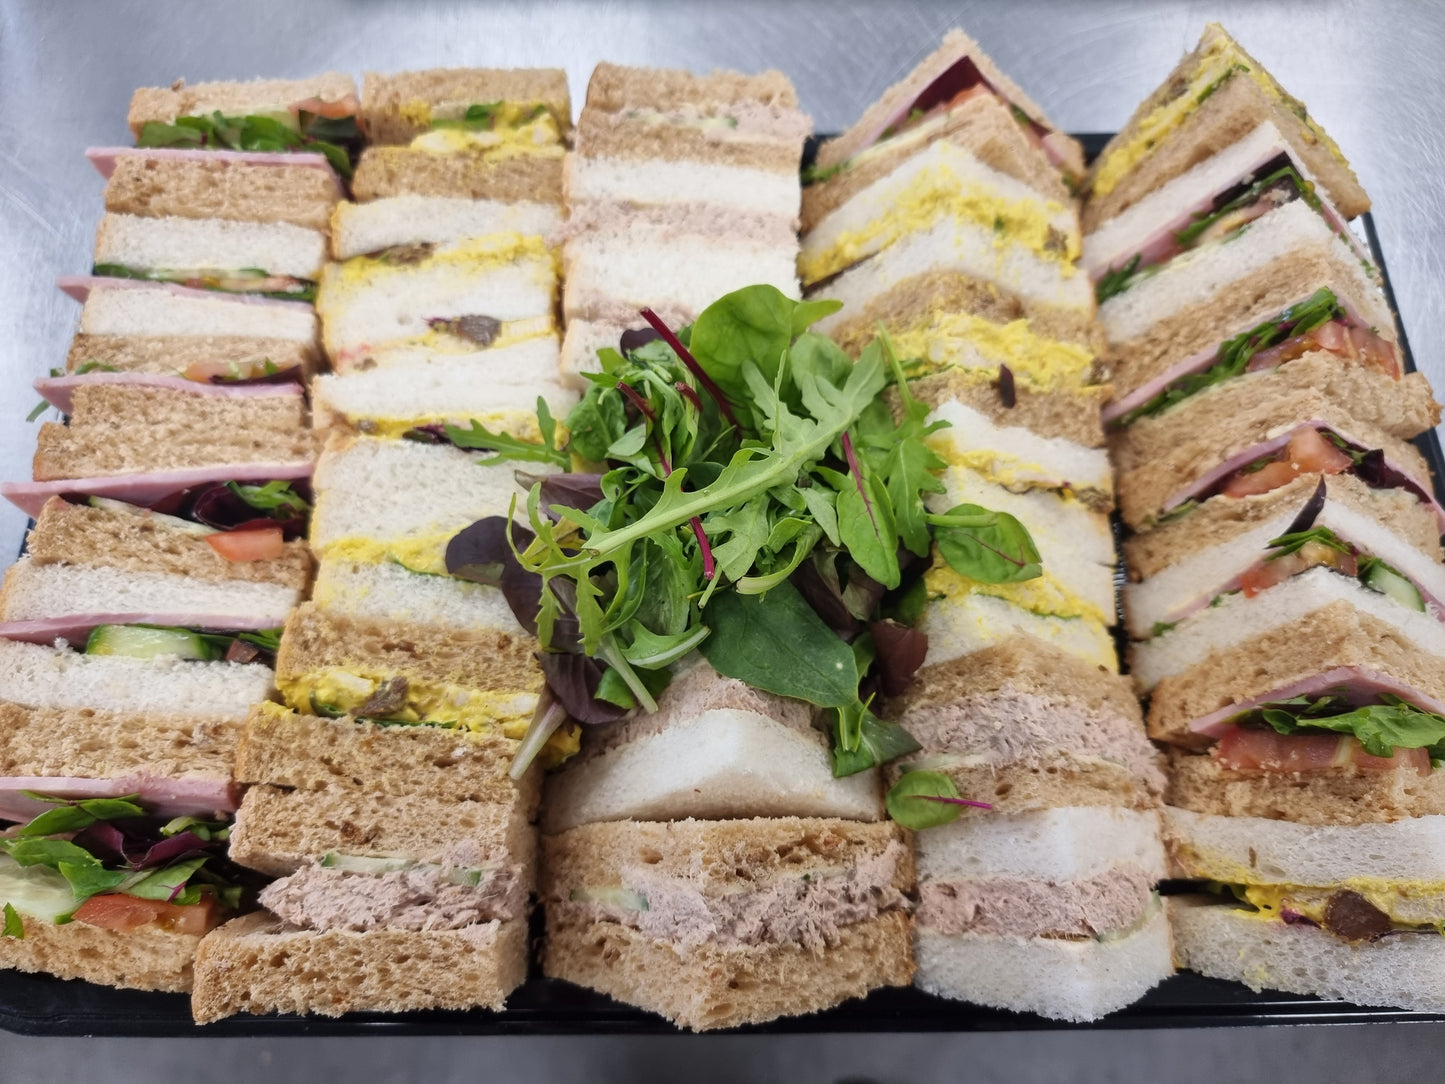 Sandwich Platter serves 10-12